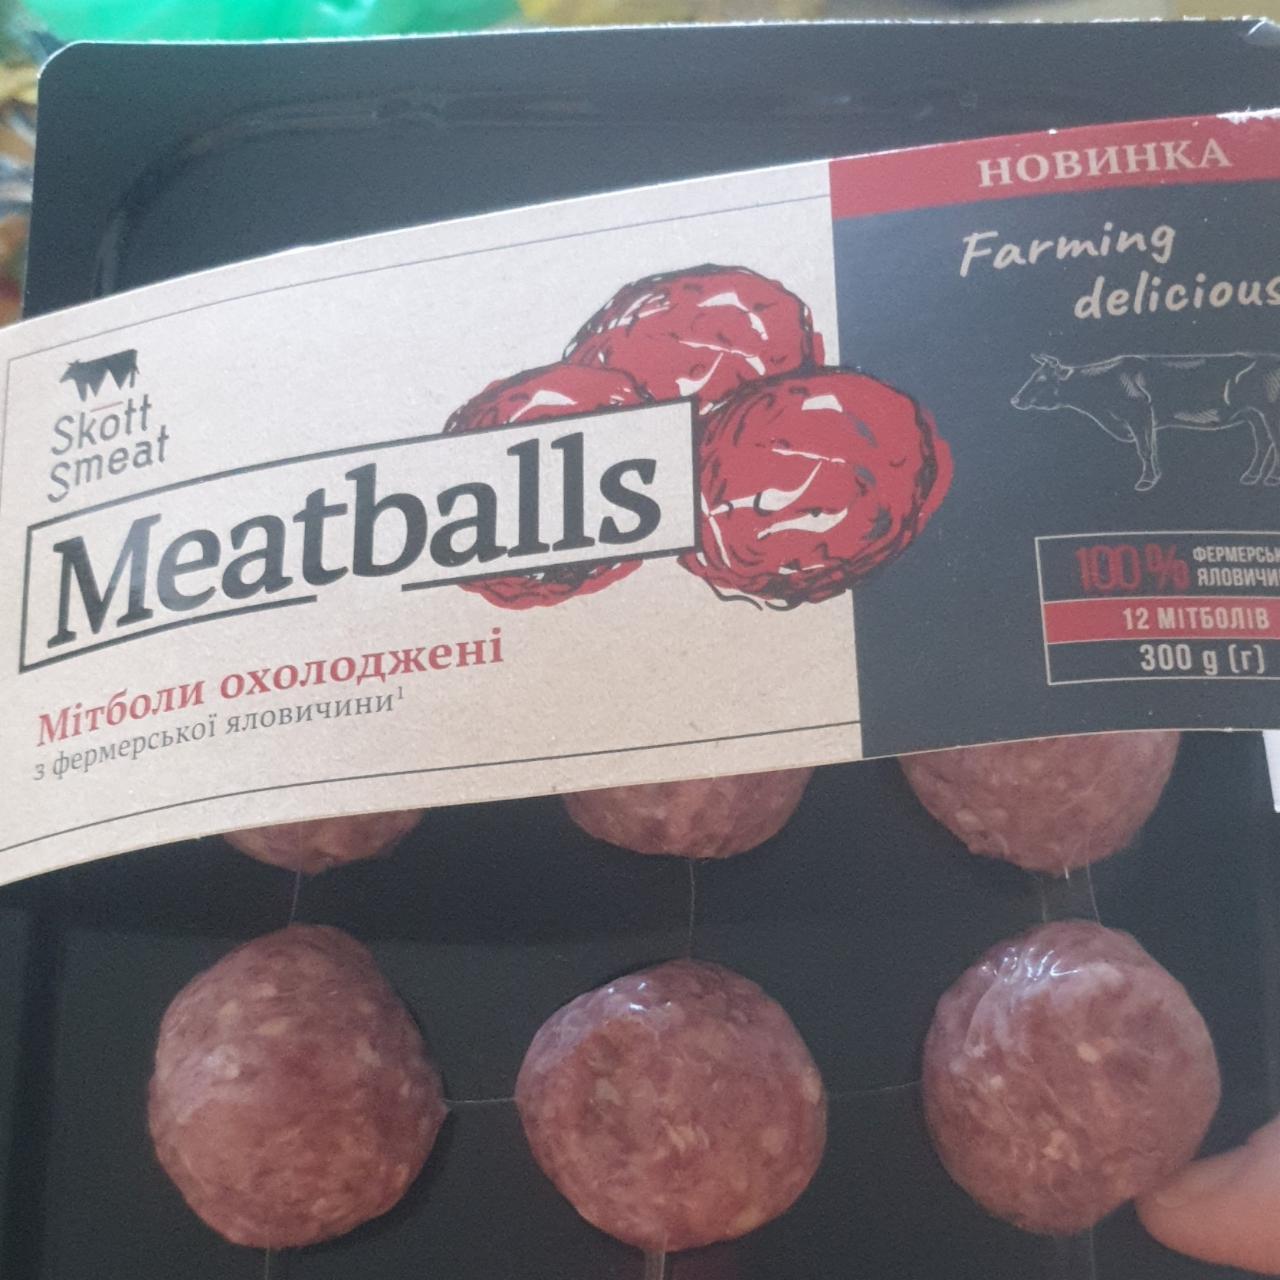 Фото - Митболы говяжьи Meatballs Skott Smeat